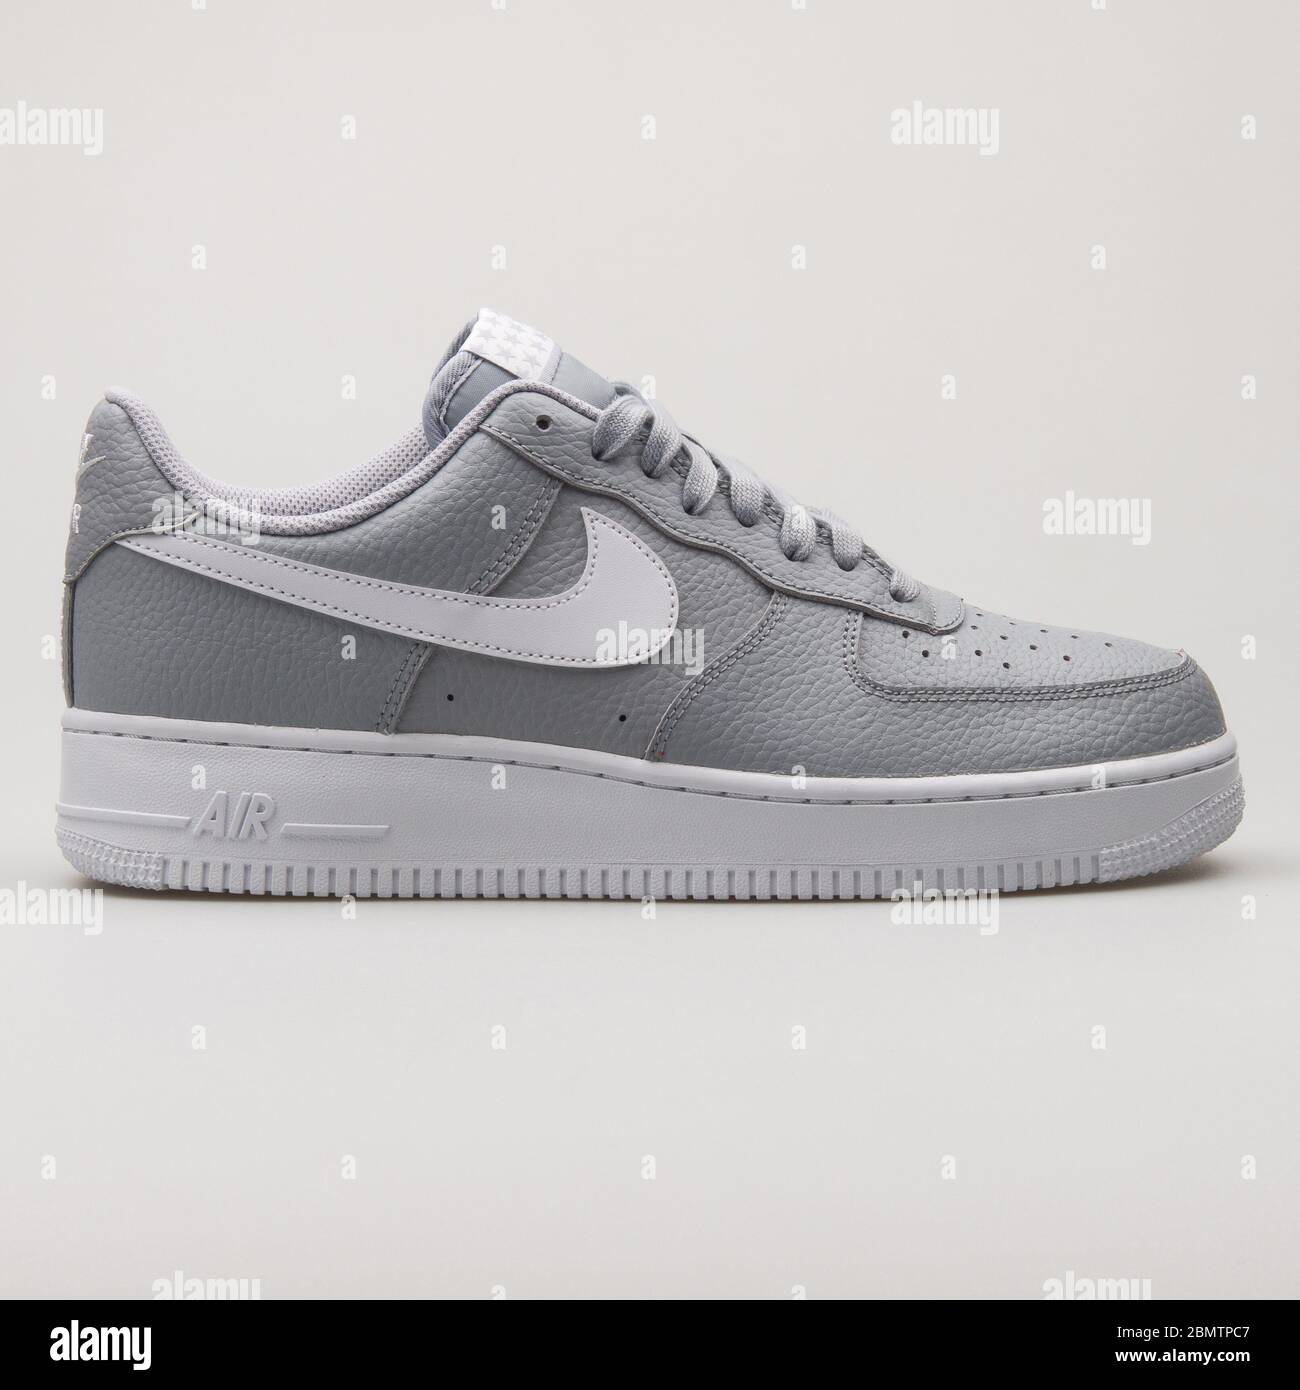 VIENA, AUSTRIA - 19 DE FEBRERO de 2018: Nike Air Force 1 07 sneakers en blanco  y gris sobre fondo blanco Fotografía de stock - Alamy